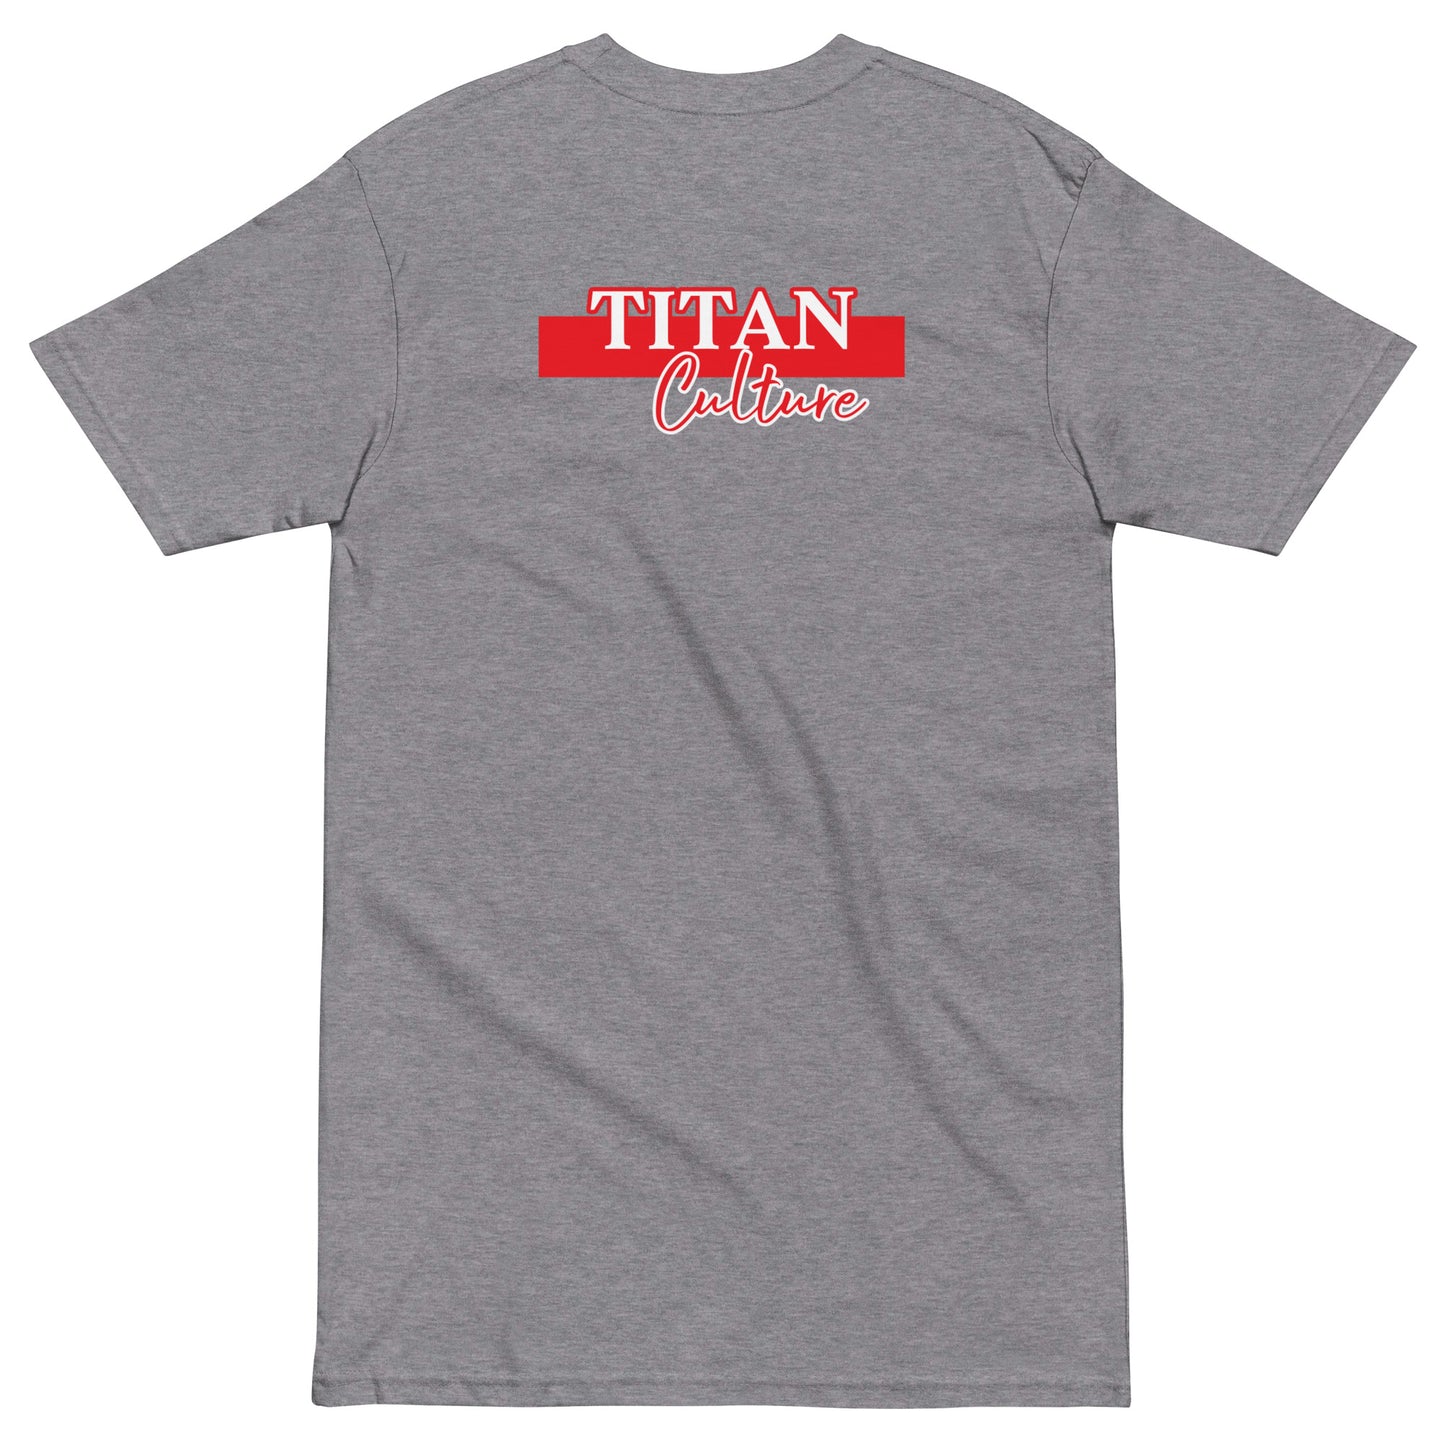 Men’s Premium Tee - Titan Culture